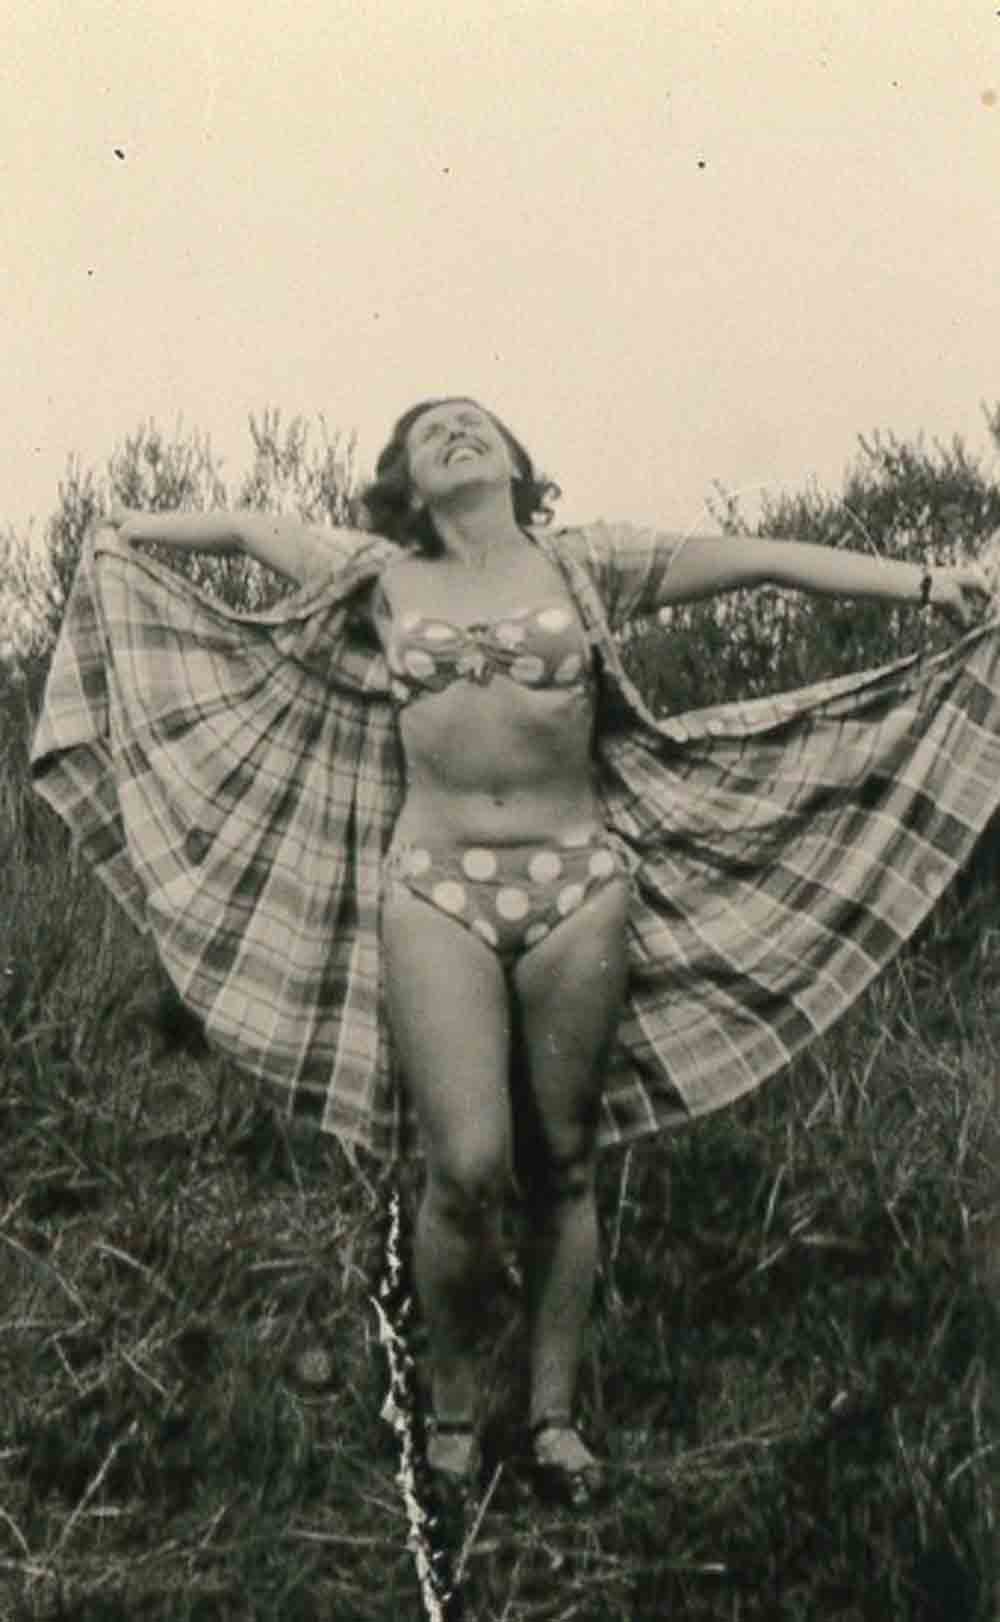 Bikiniartmuseum, Bademoden Shooting nach 100. Geburtstag, Bikini Day: Ruth Megary war eine der ersten Bikini Trägerinnen